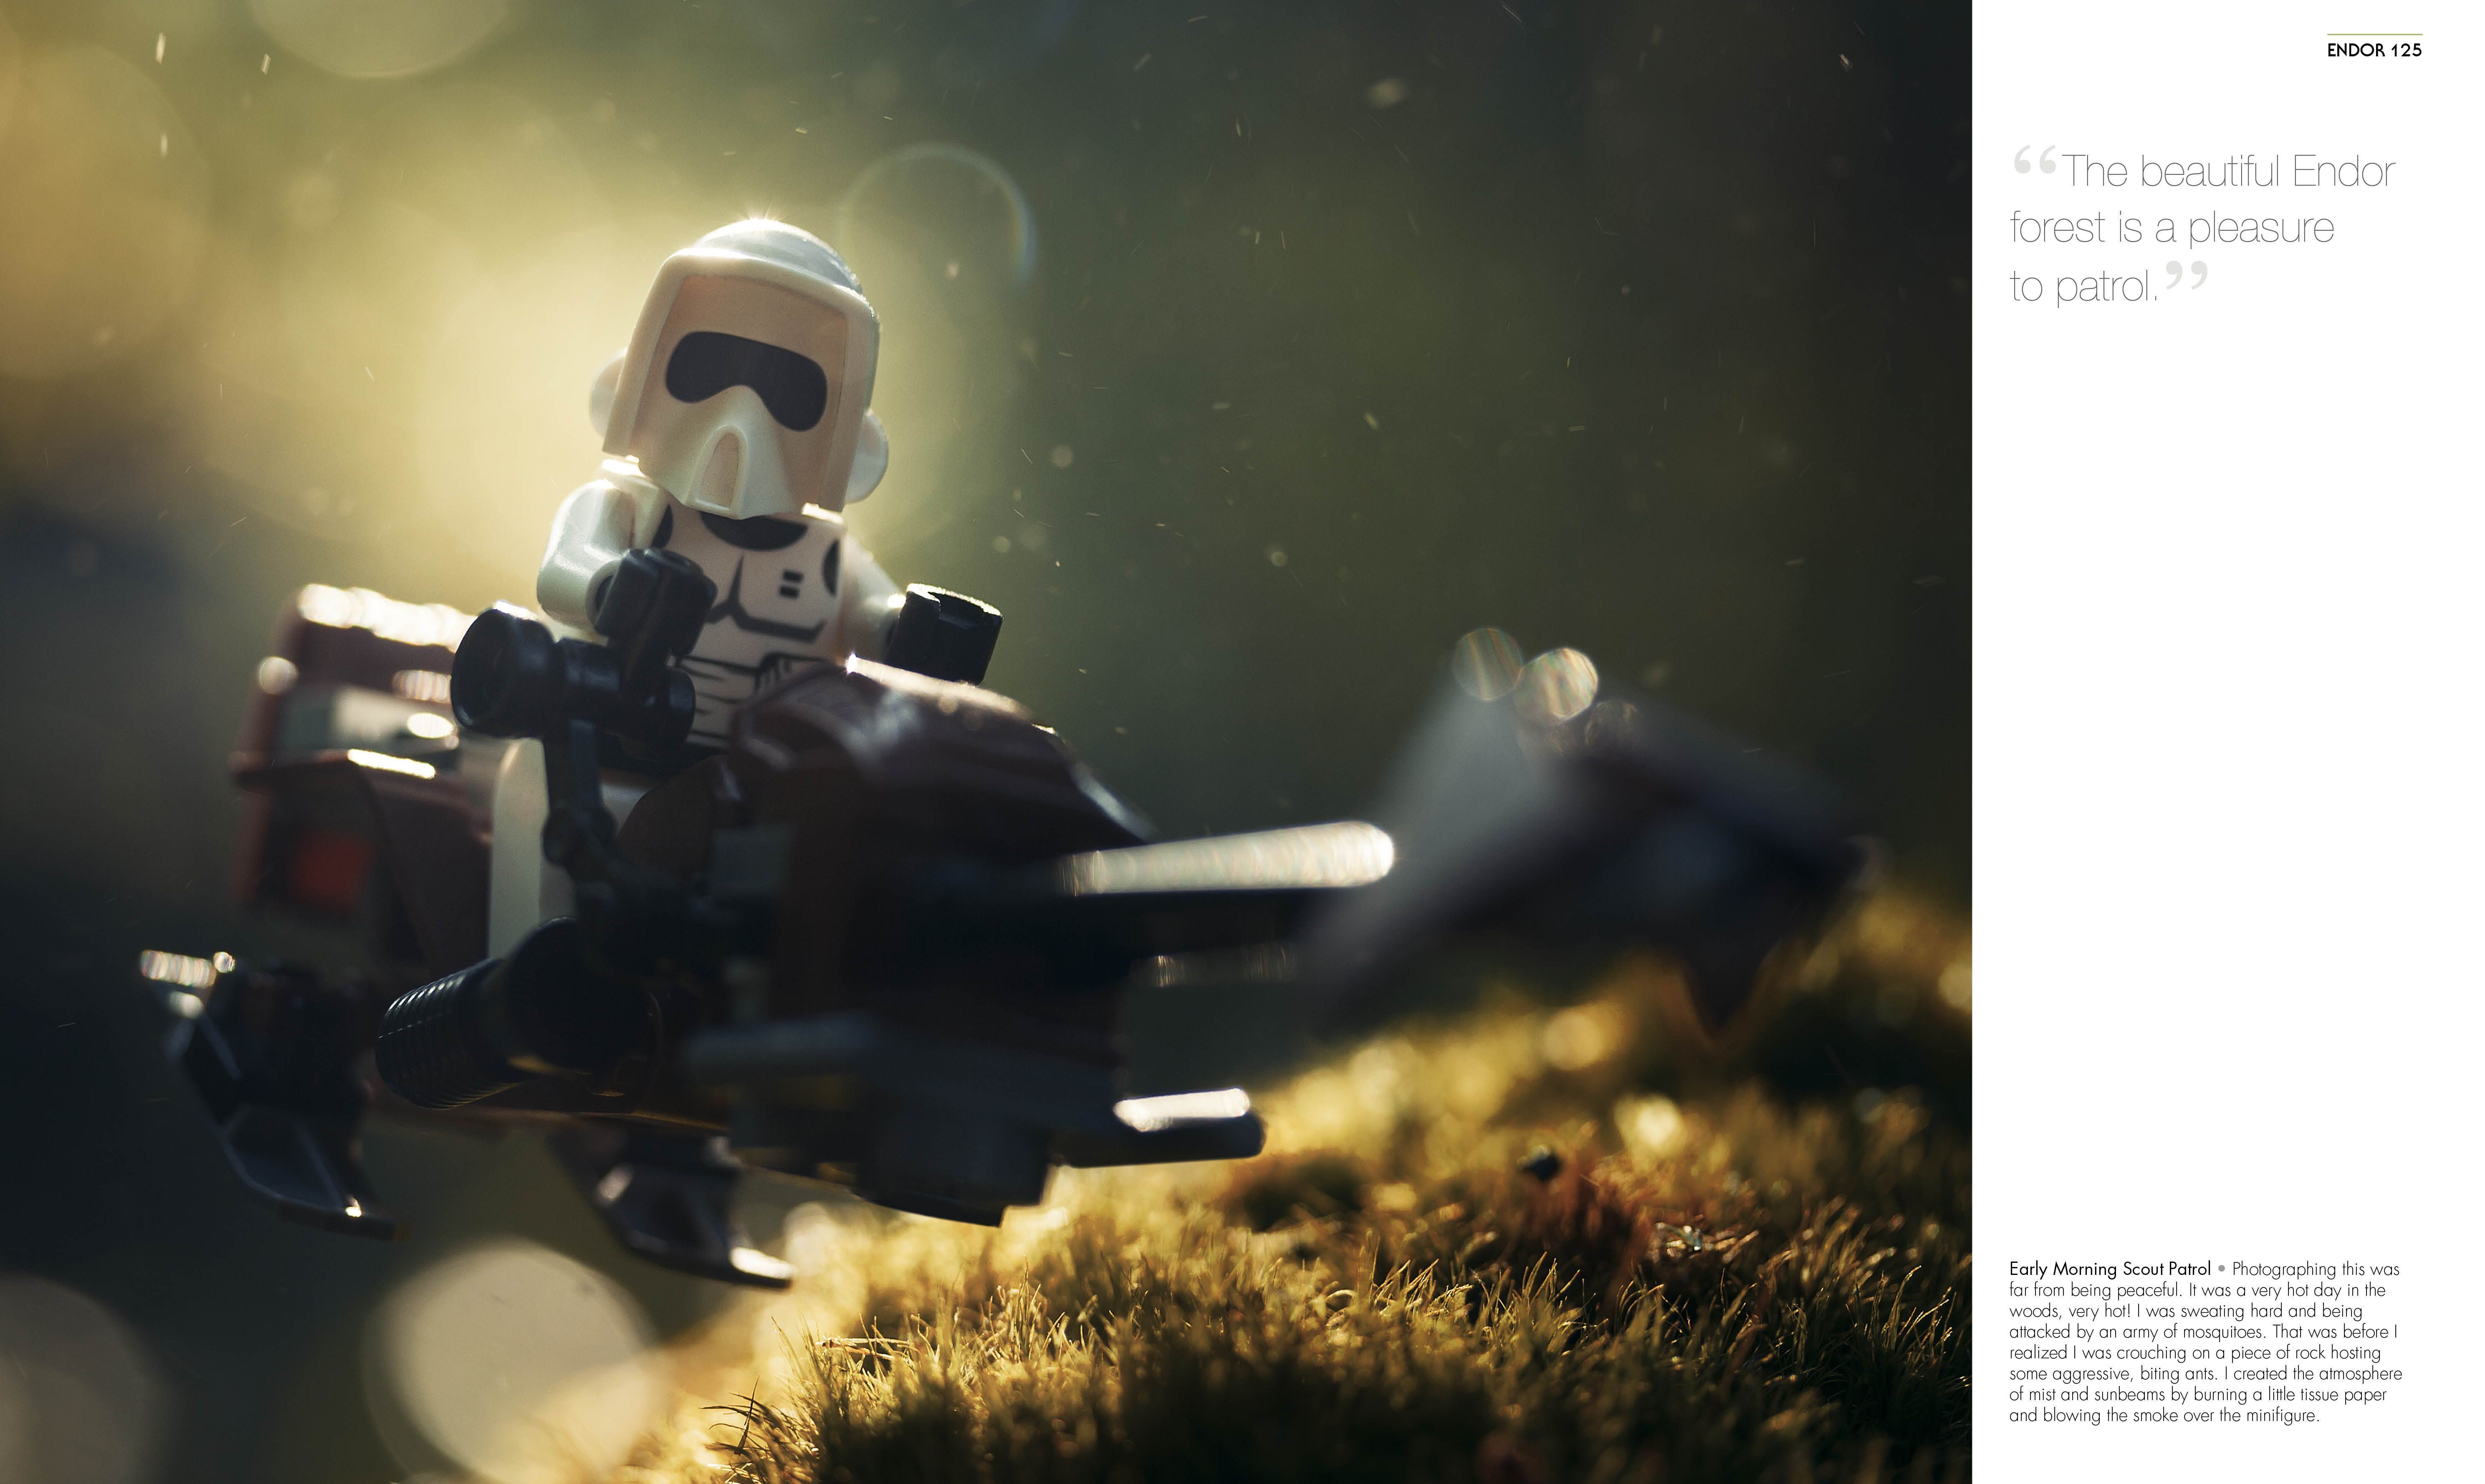 Lego Star Wars Wallpaper Themes Gallery #om01 - WallDN Wallpaper Blog